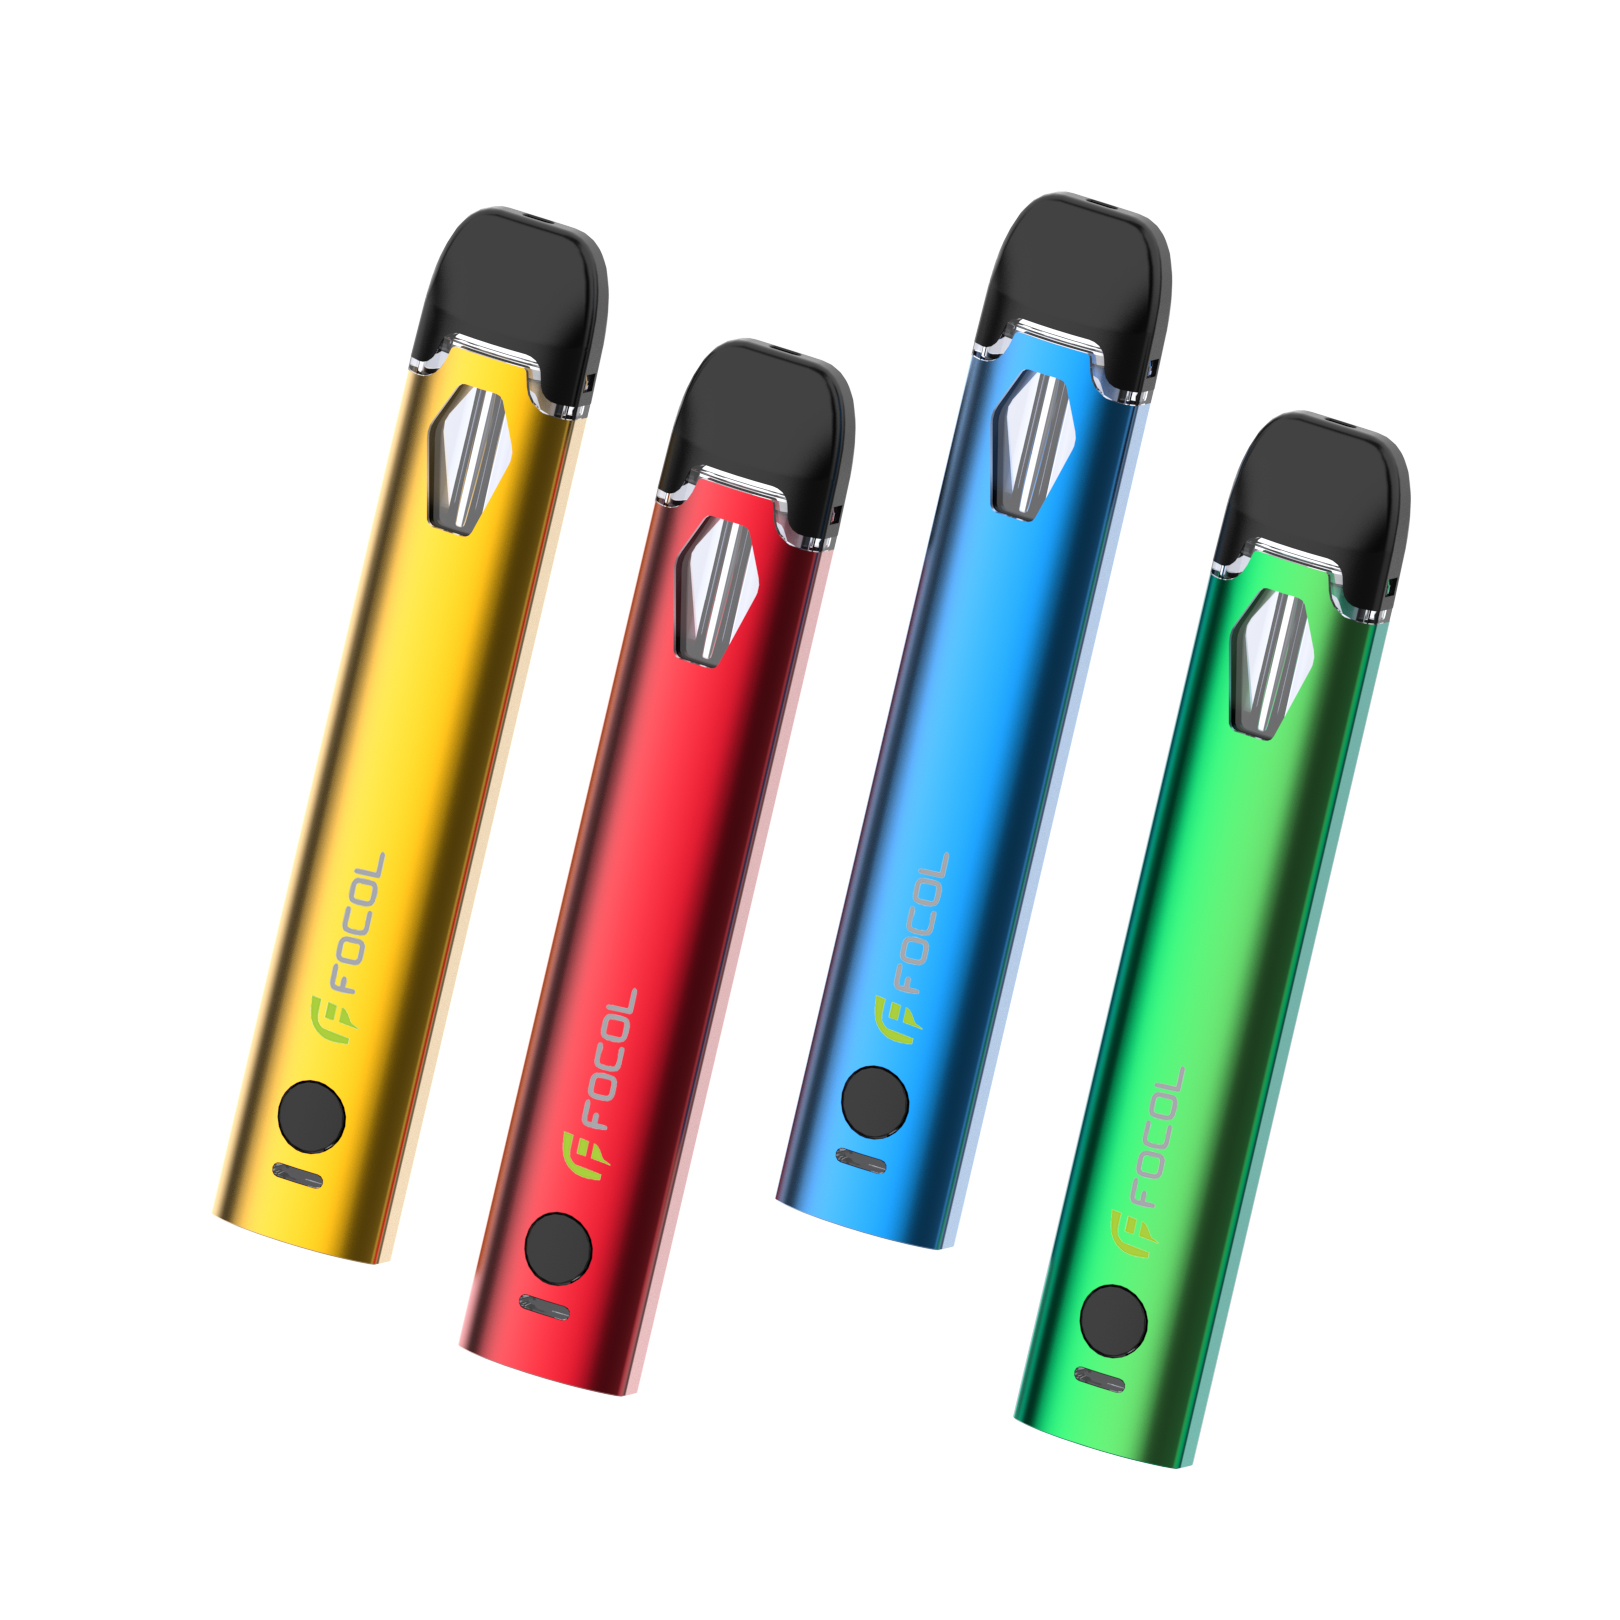 Premium Delta-10 Vape Cartridges For Sale Online